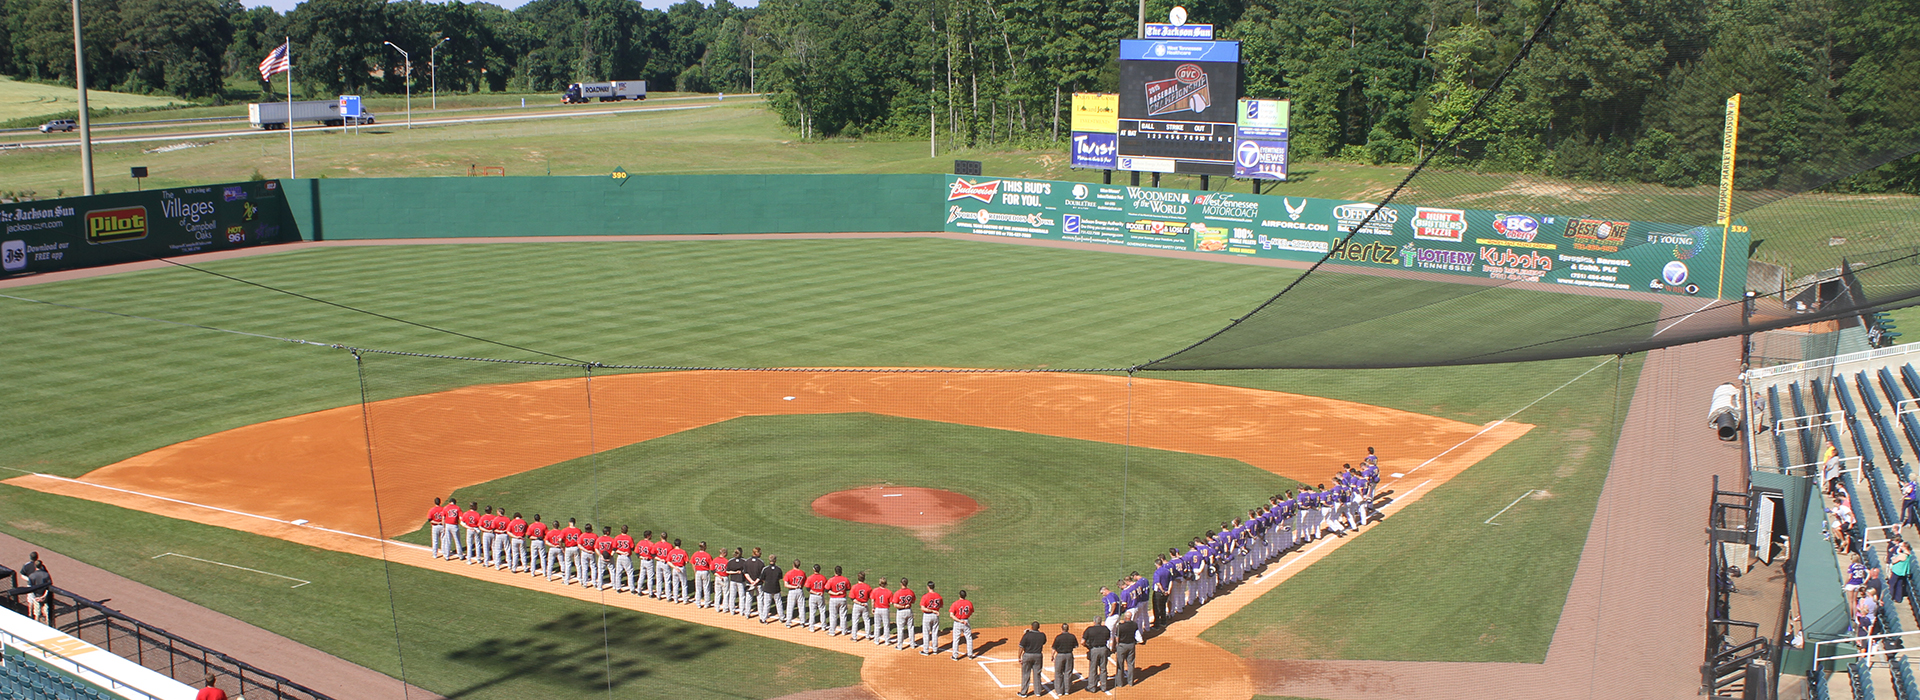 2021 OVC Baseball Championship to be held at The Ballpark at Jackson